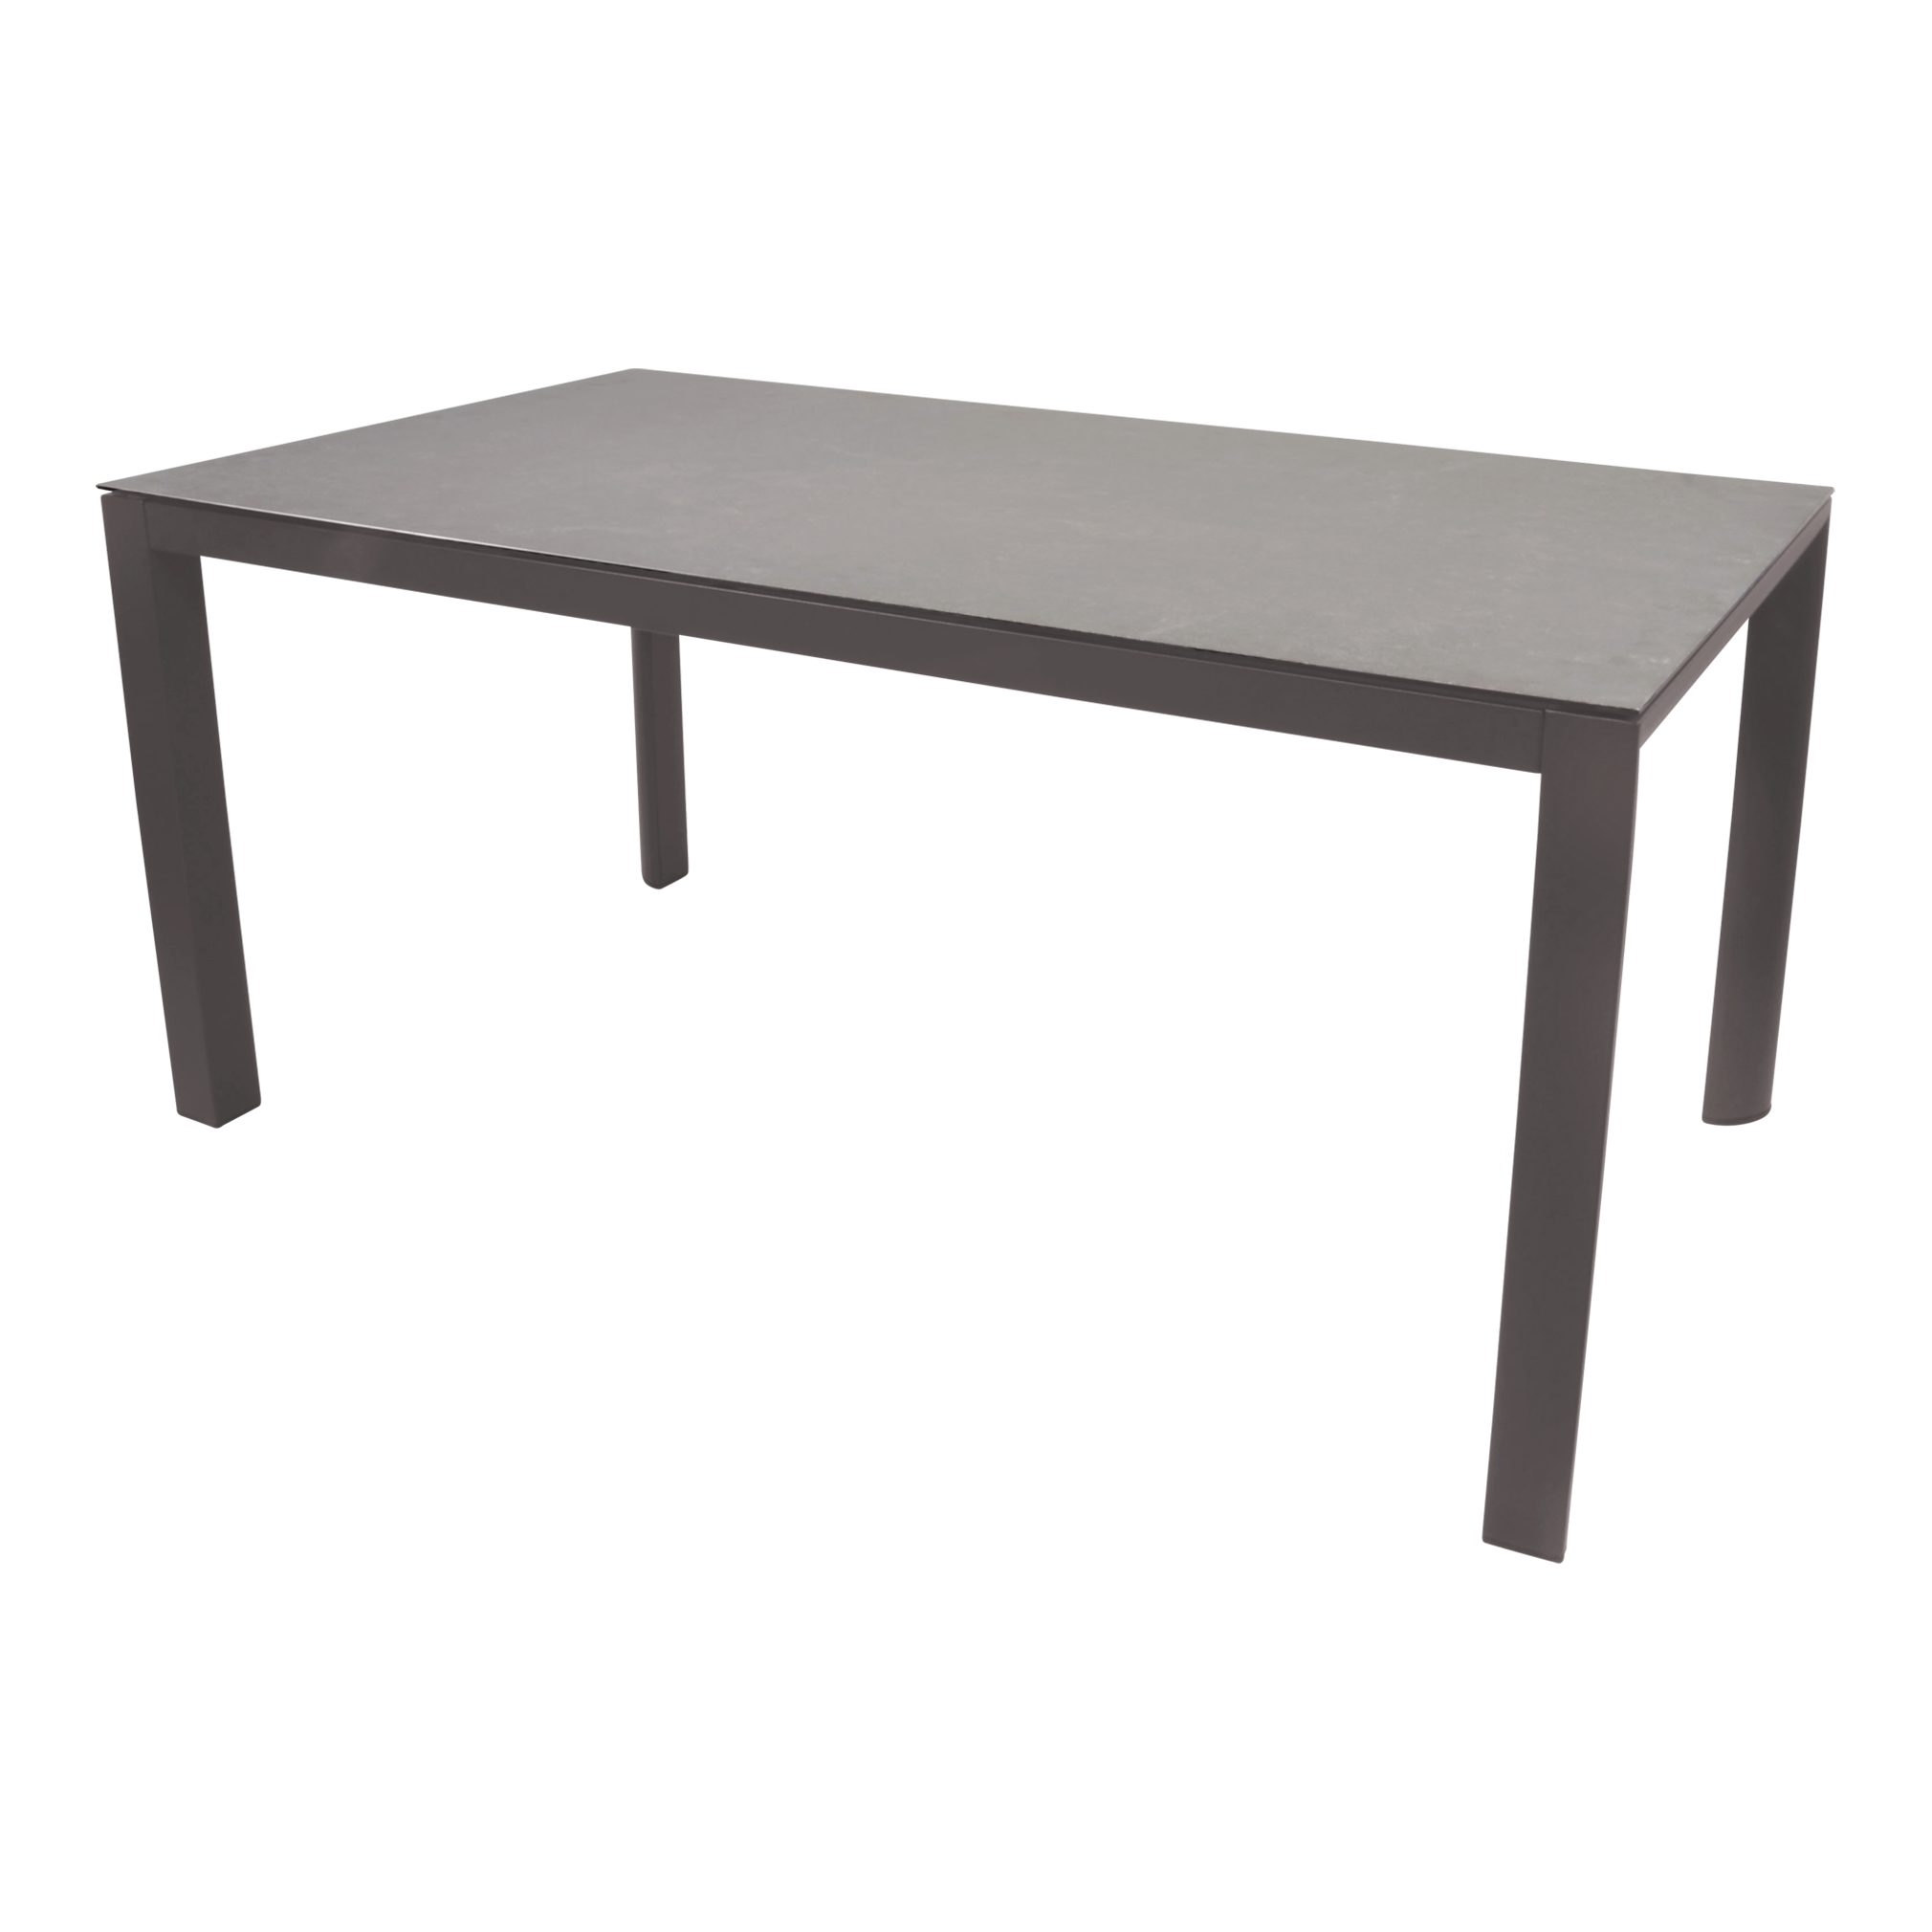 160x90x74cm Tischplatte Tisch Living grau/beige Keramik-Glas Lesli Mojito Gartentisch Ceramic Gartentisch Pardo